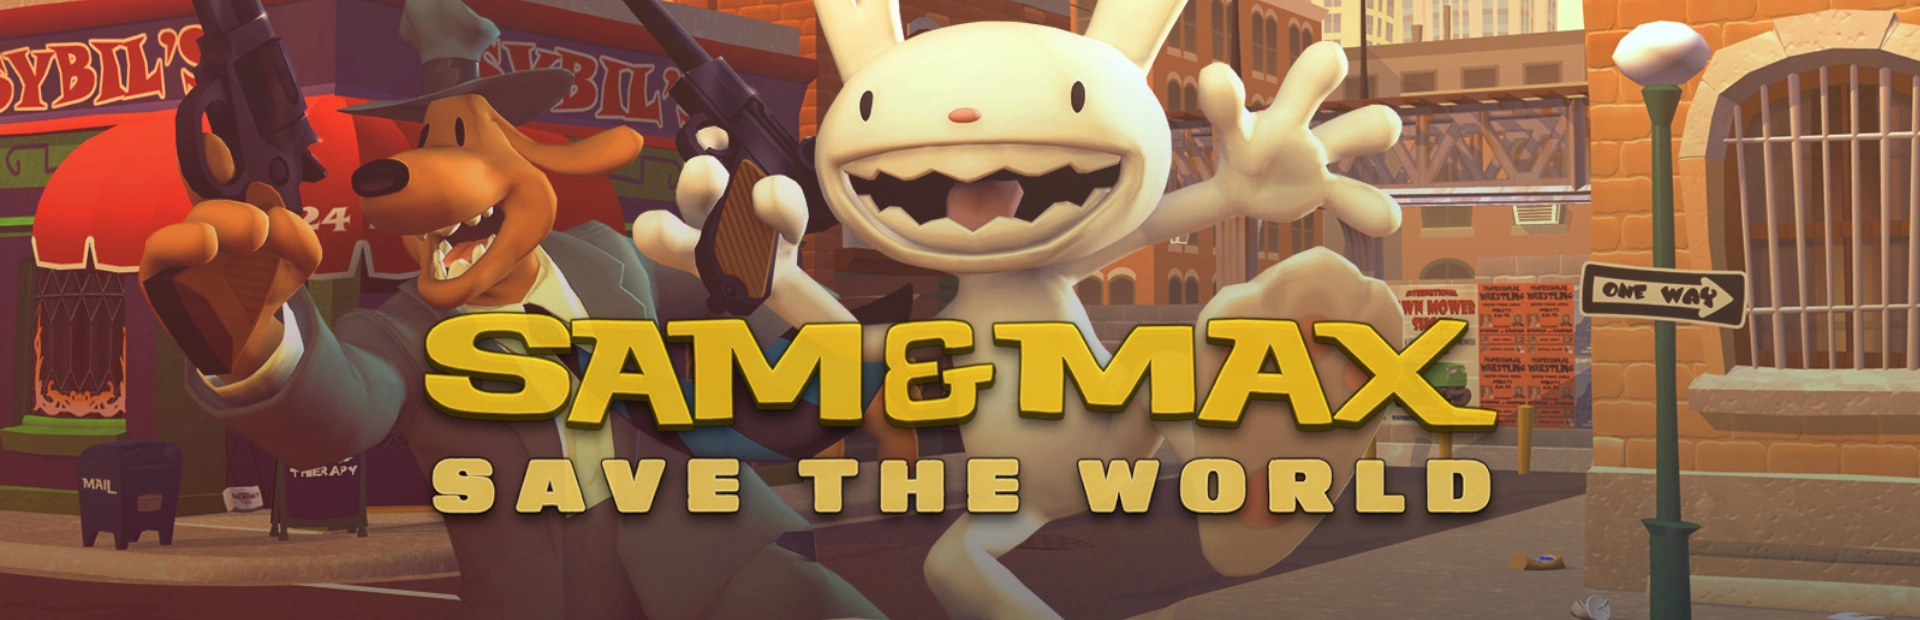 دانلود بازی Sam & Max Save the World برای کامپیوتر | گیمباتو